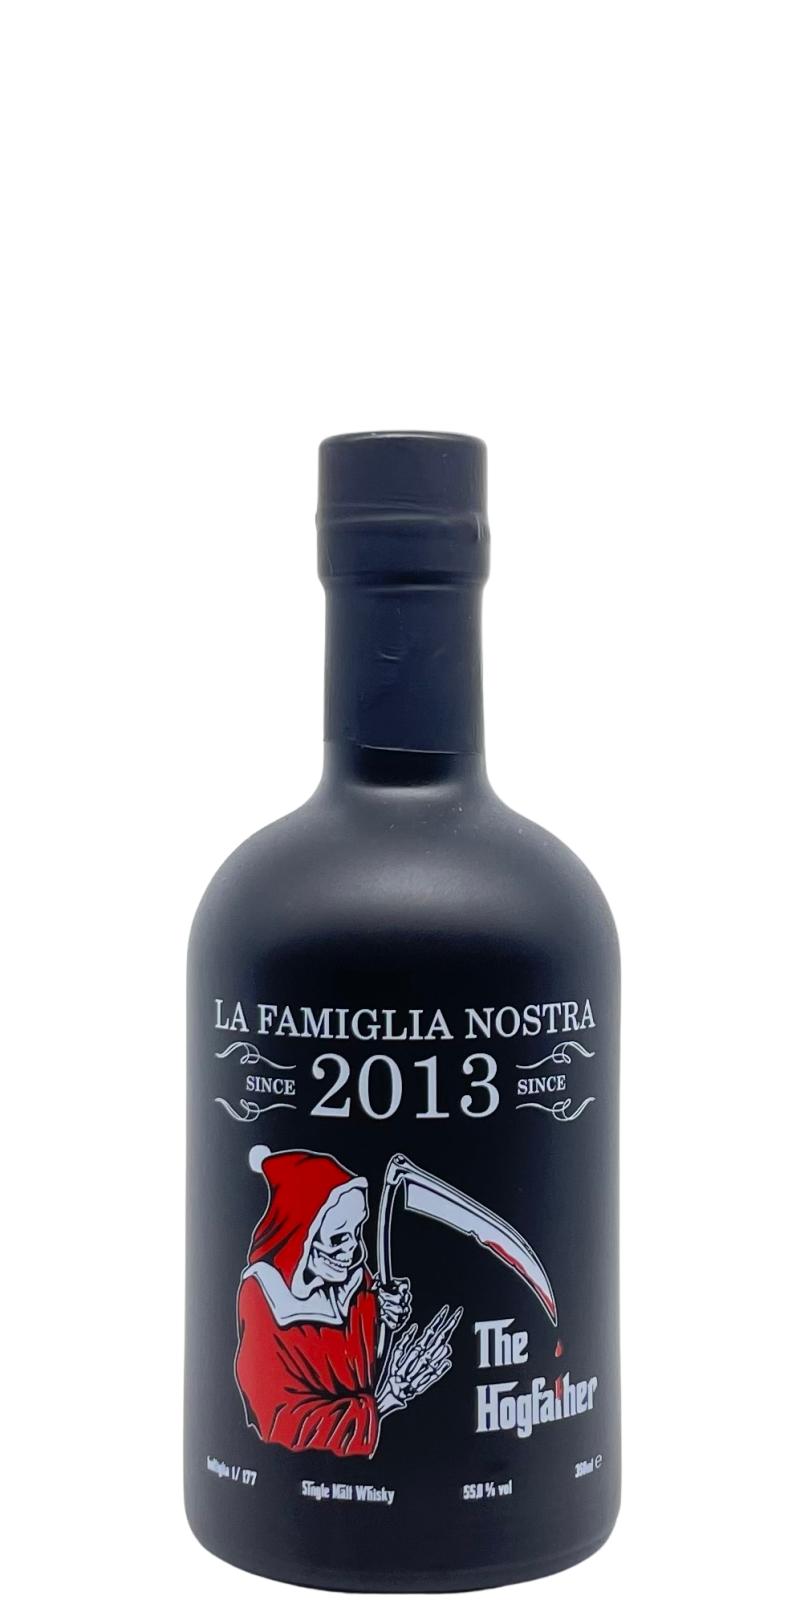 La Famiglia Nostra 2008 LFN The Hogfather 3 PX Hogshead 1st Fil PX Demi Fut Finish 55.8% 350ml